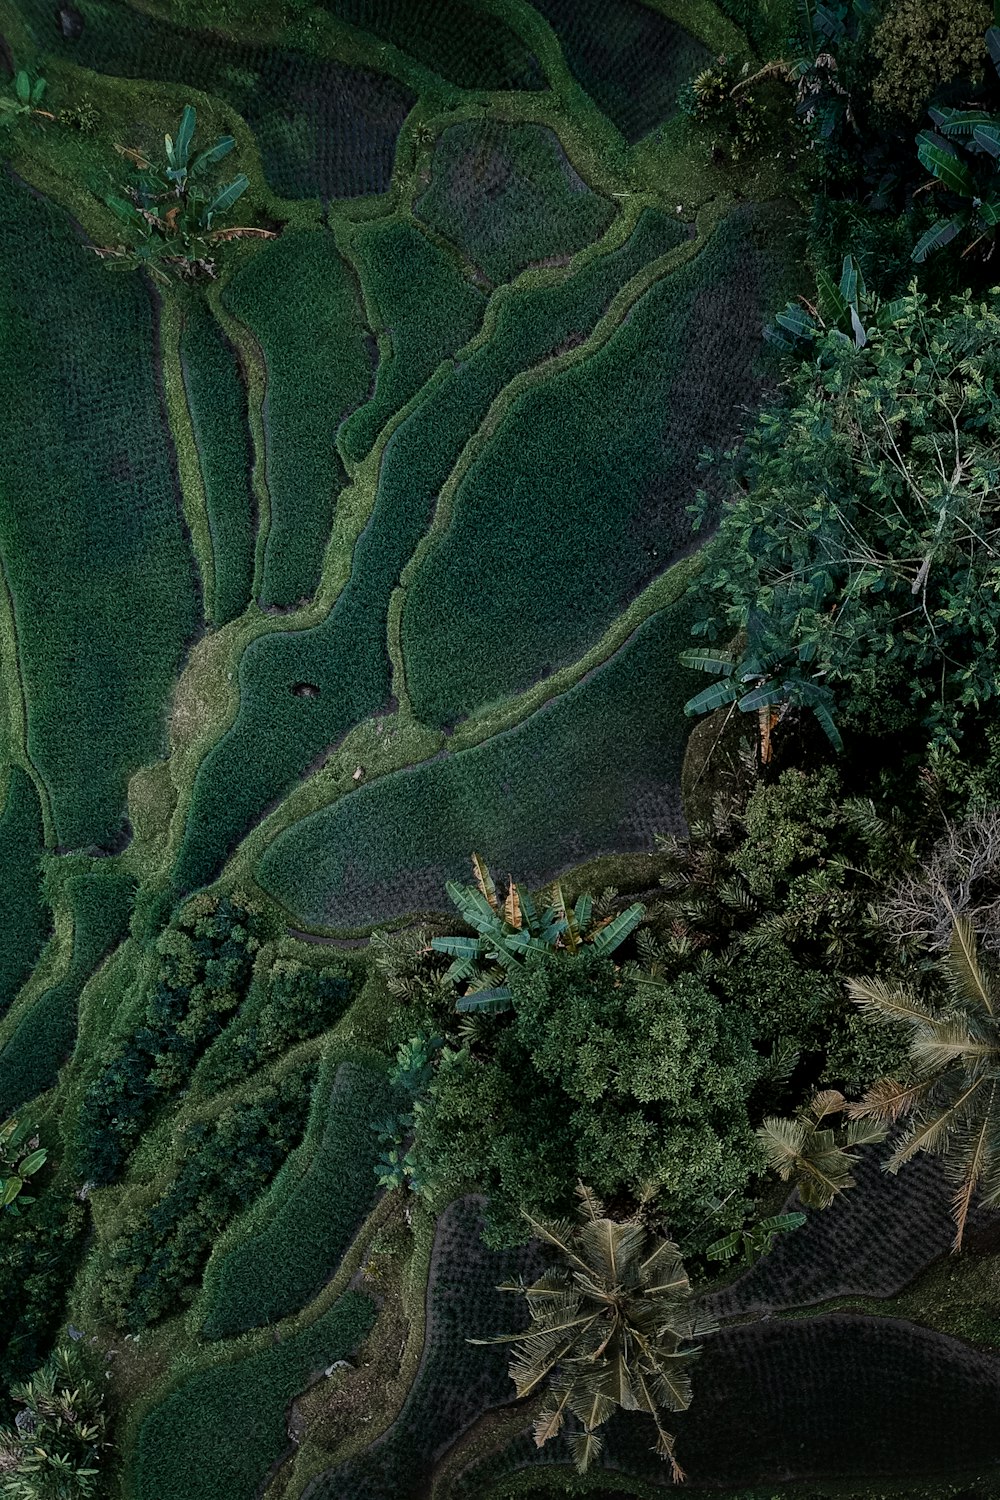 Fotografía de vista aérea de un lote de árboles verdes